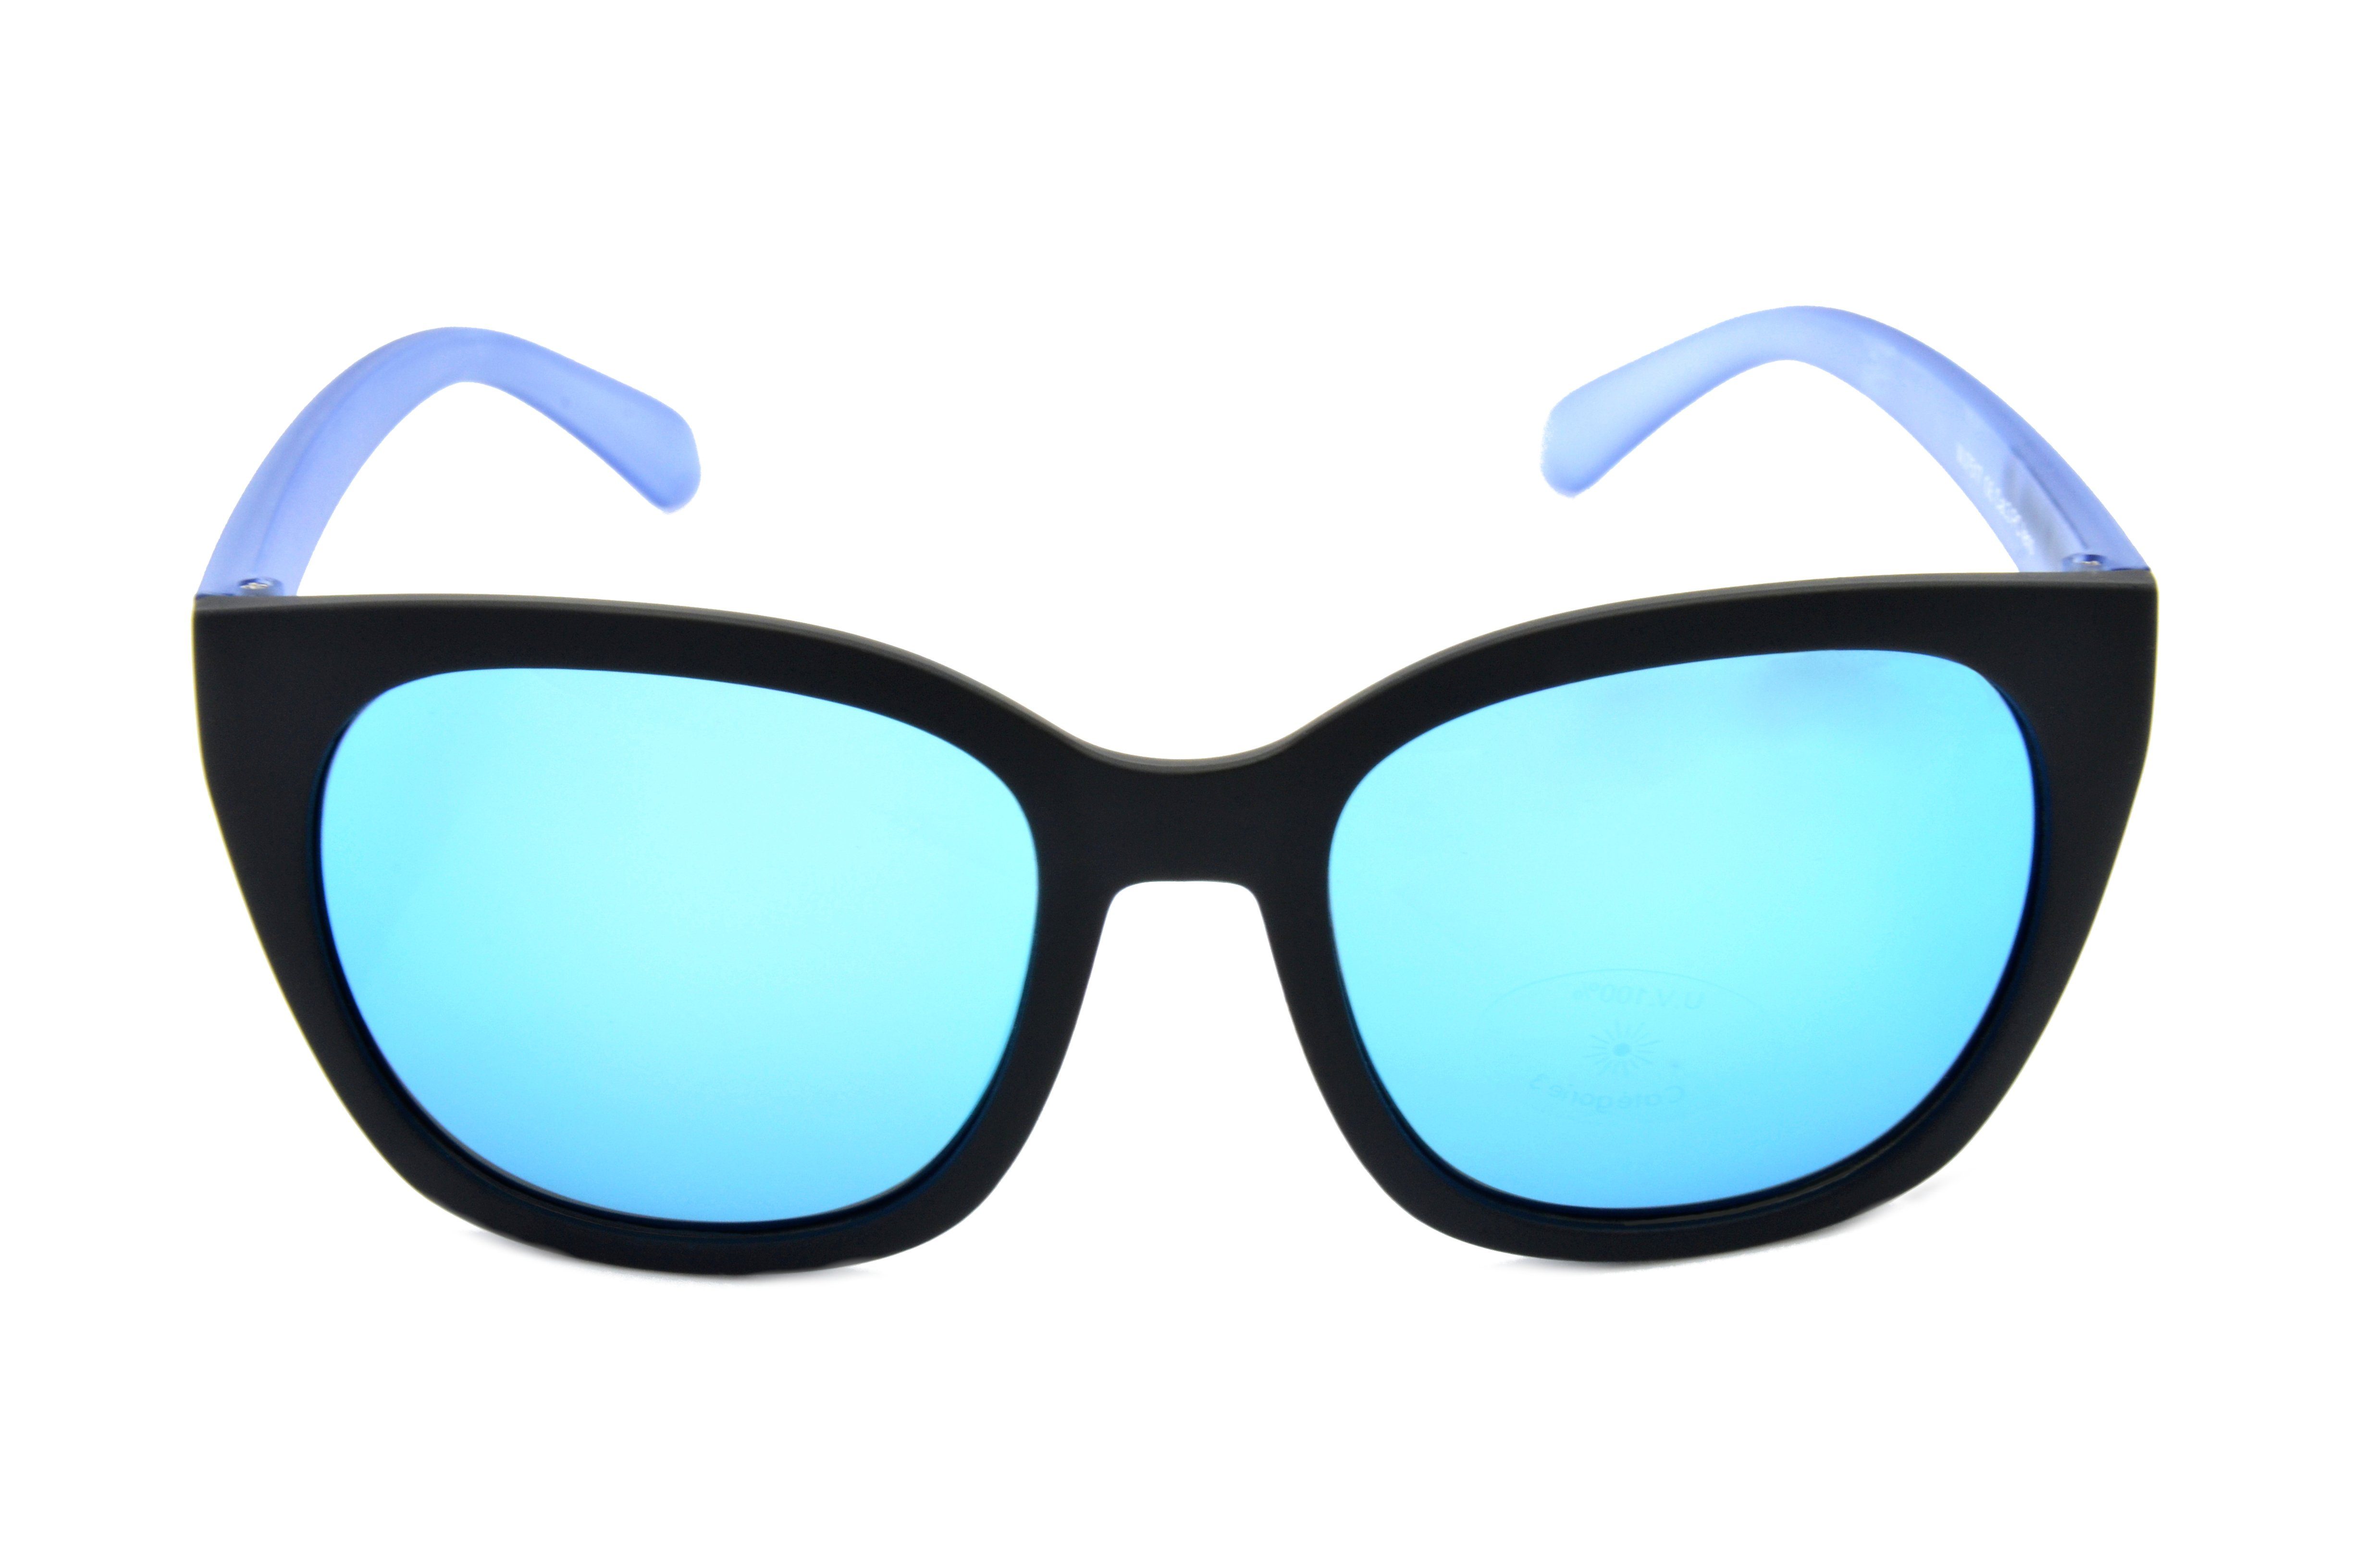 Sonnenbrille halbtransparenter Mädchen Rahmen WJ7517 grau Jugendbrille GAMSKIDS Damen blau, Kinderbrille 8-18 Unisex, pink, Jahre kids Gamswild